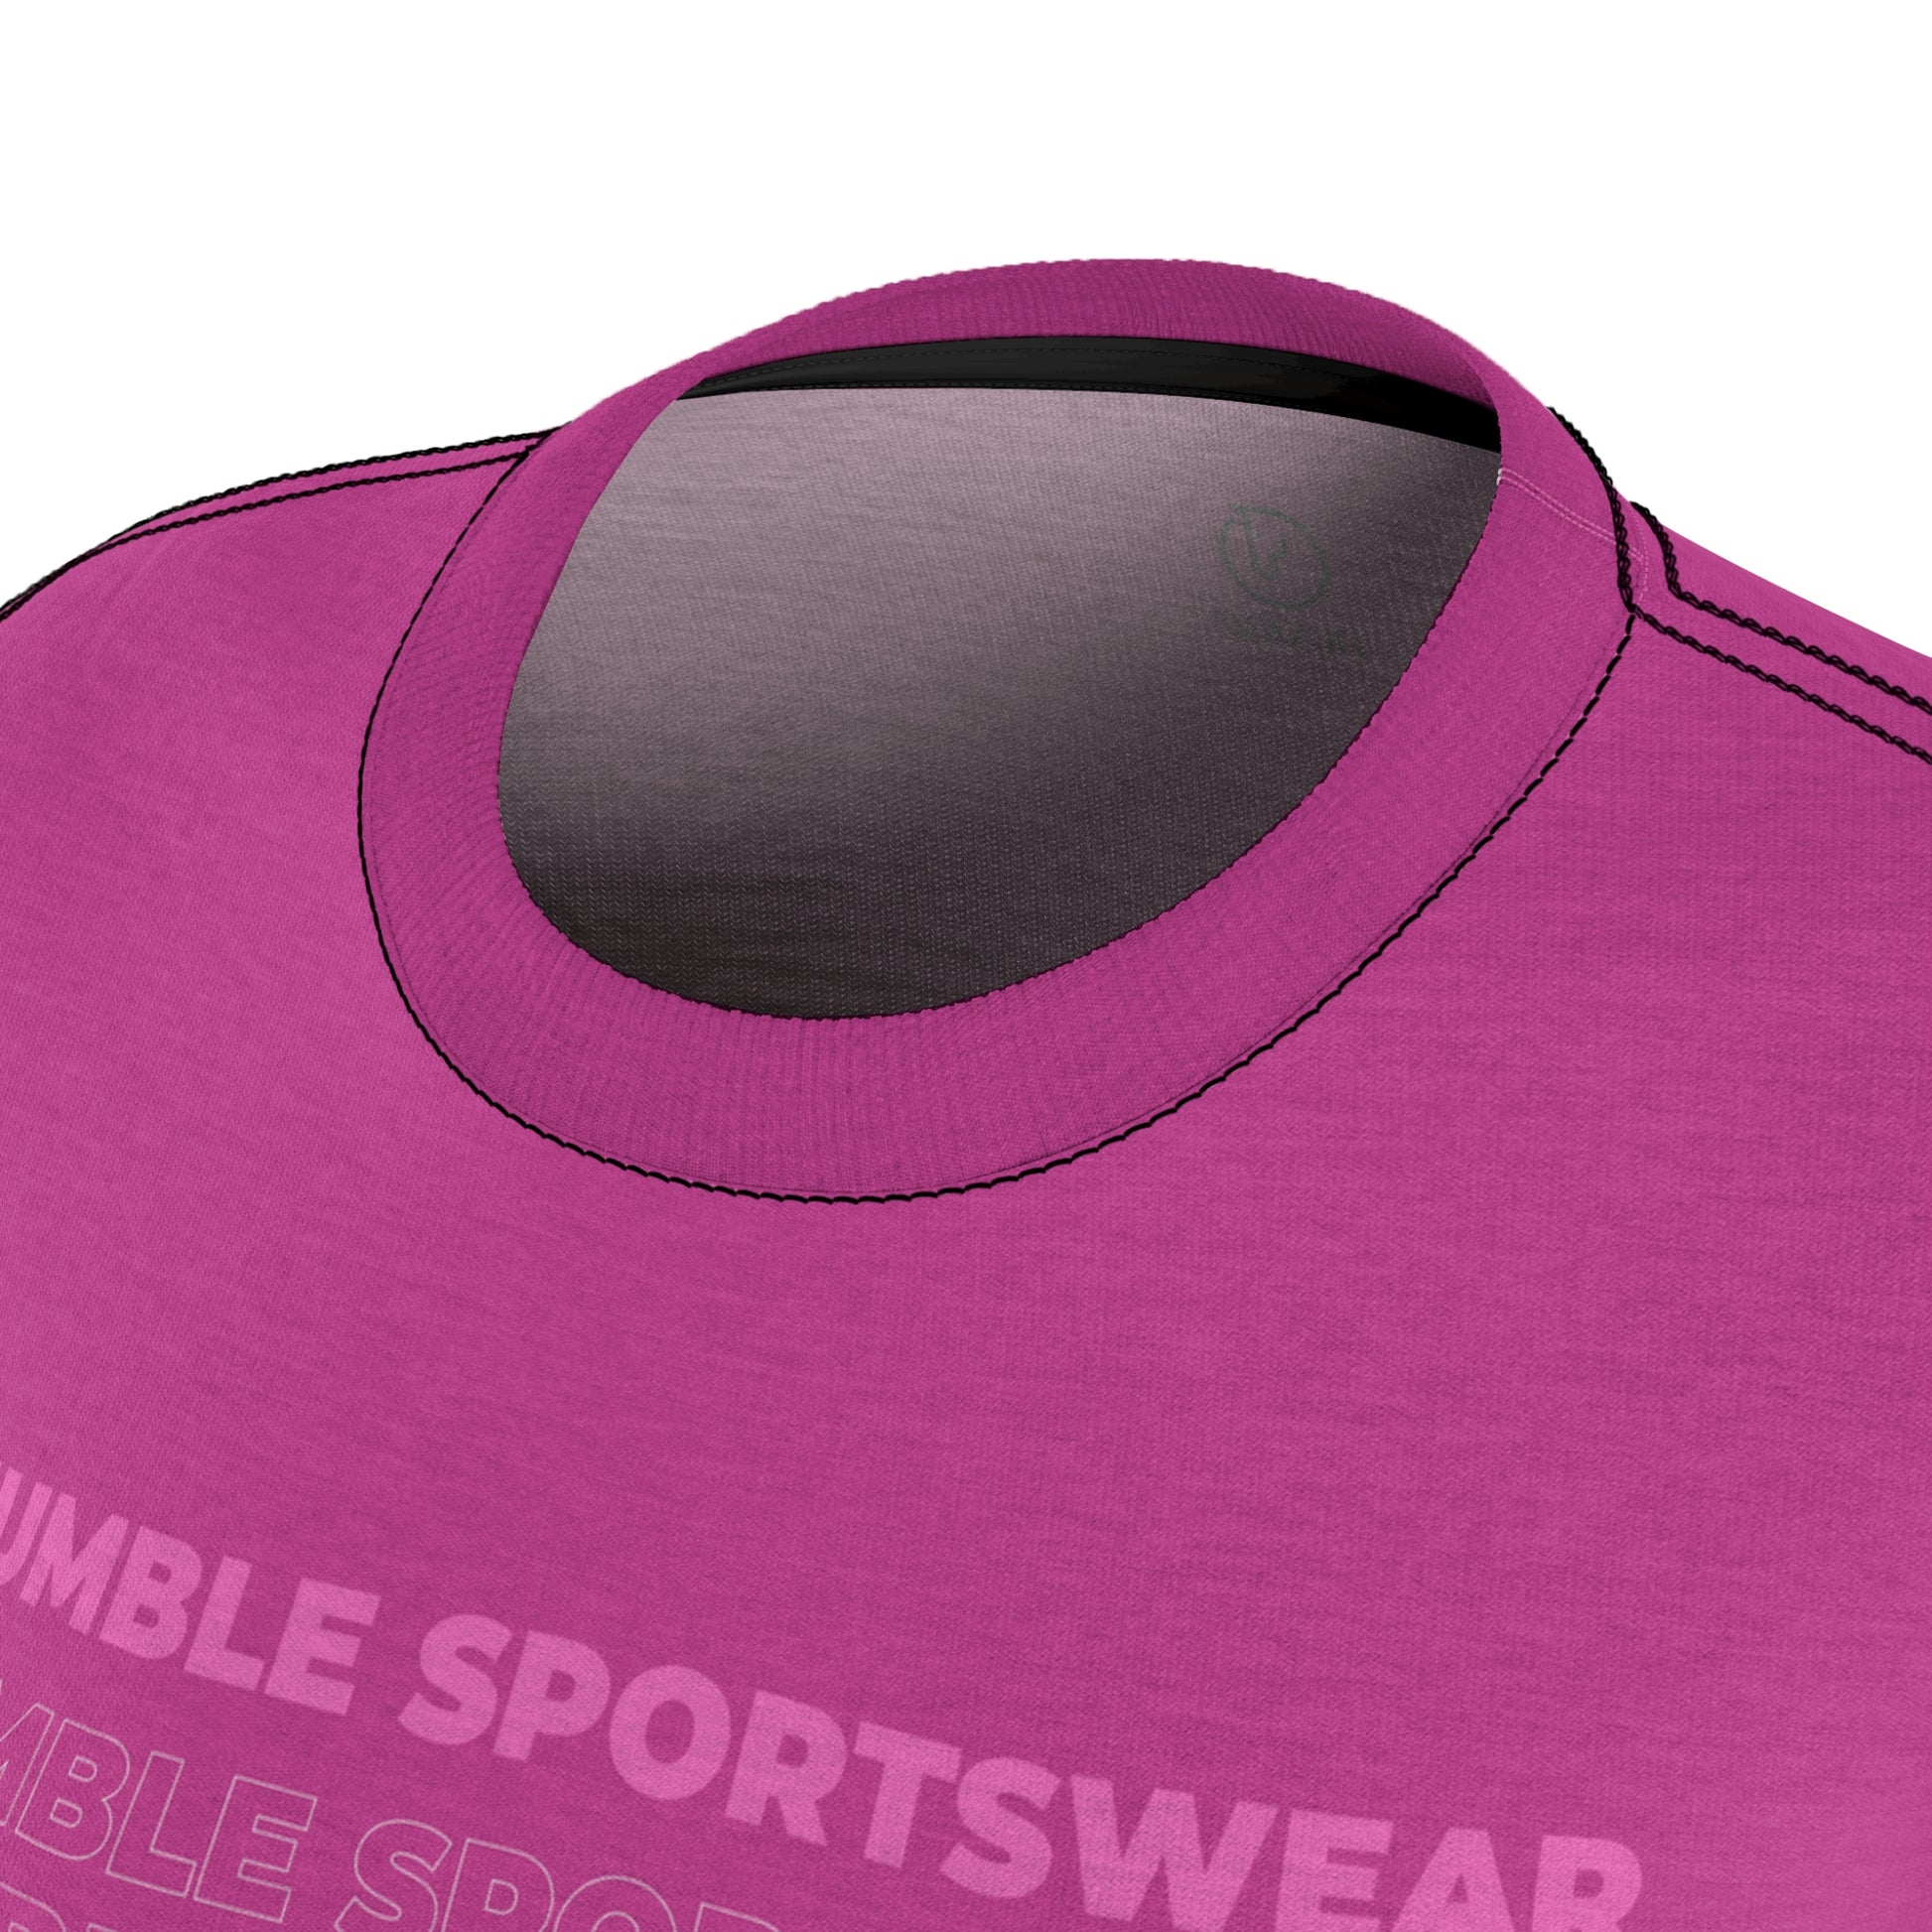 Humble Sportswear, women’s t-shirts, women’s crew neck t-shirts